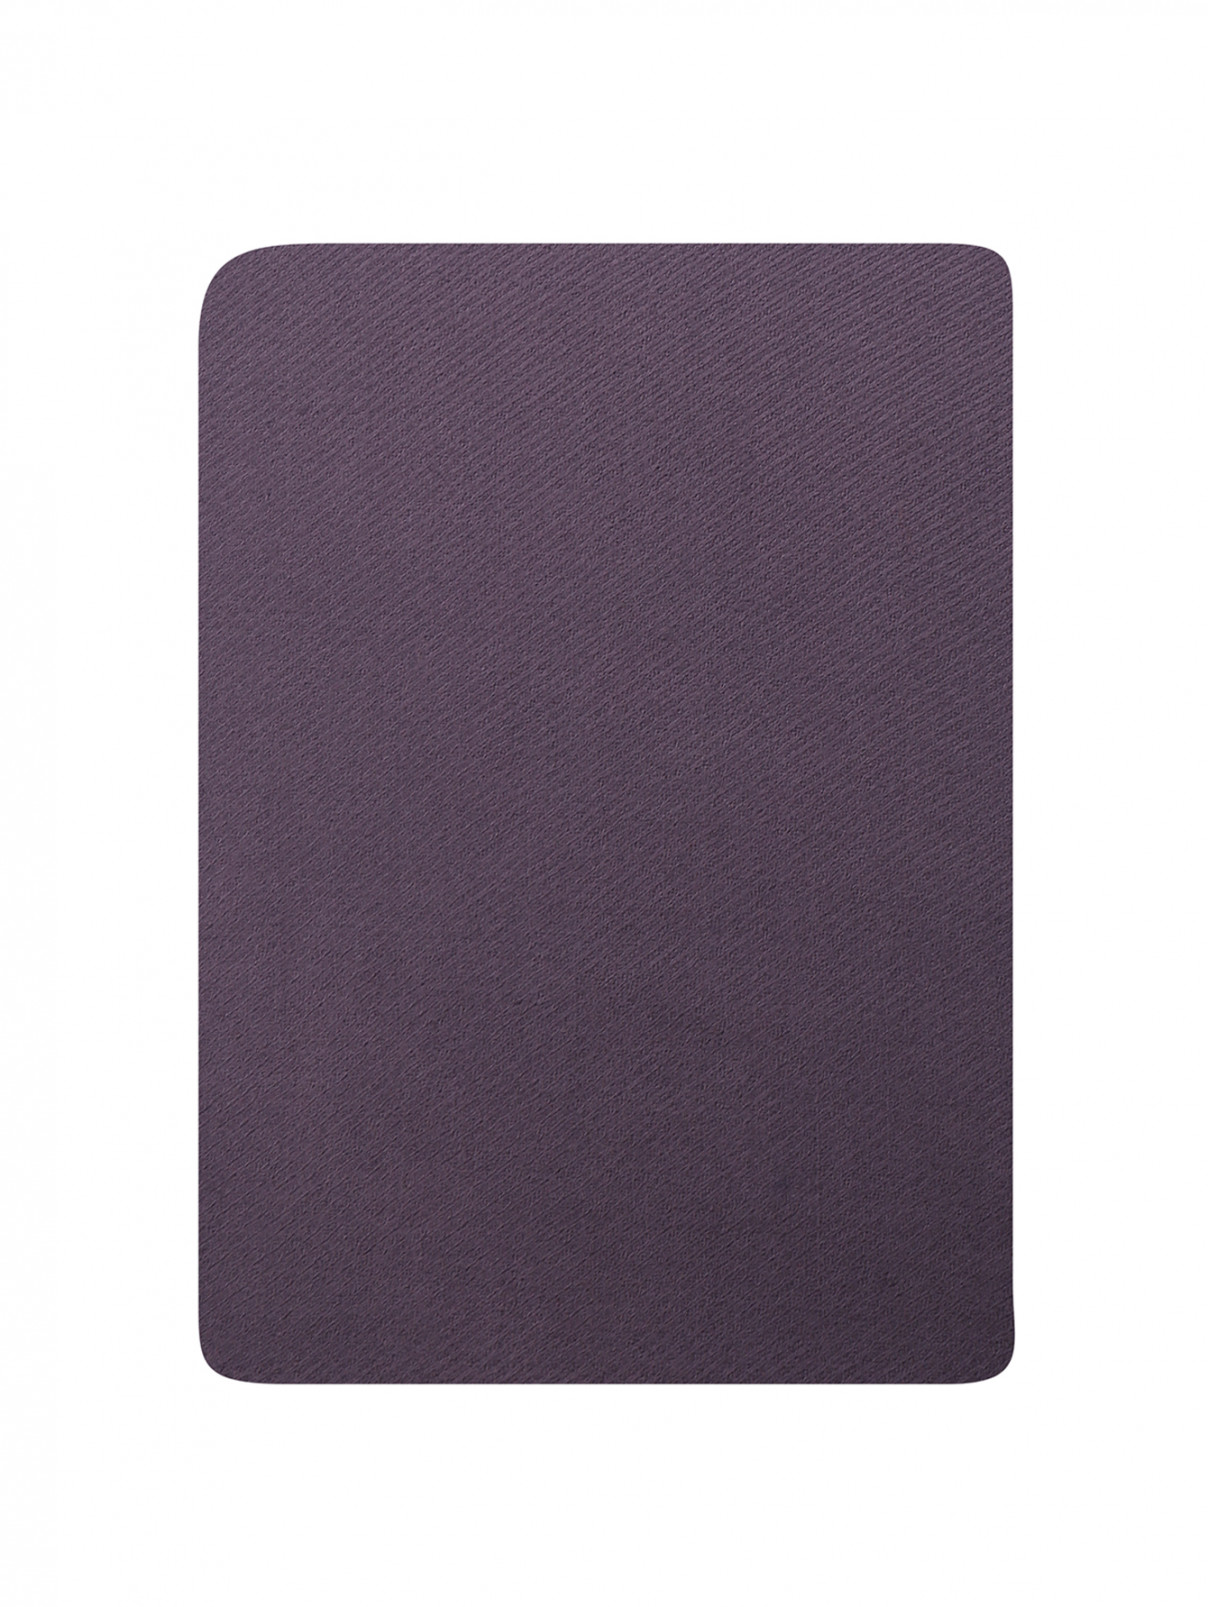 Шарф из шерсти и кашемира с бахромой Faliero Sarti  –  Общий вид  – Цвет:  Фиолетовый